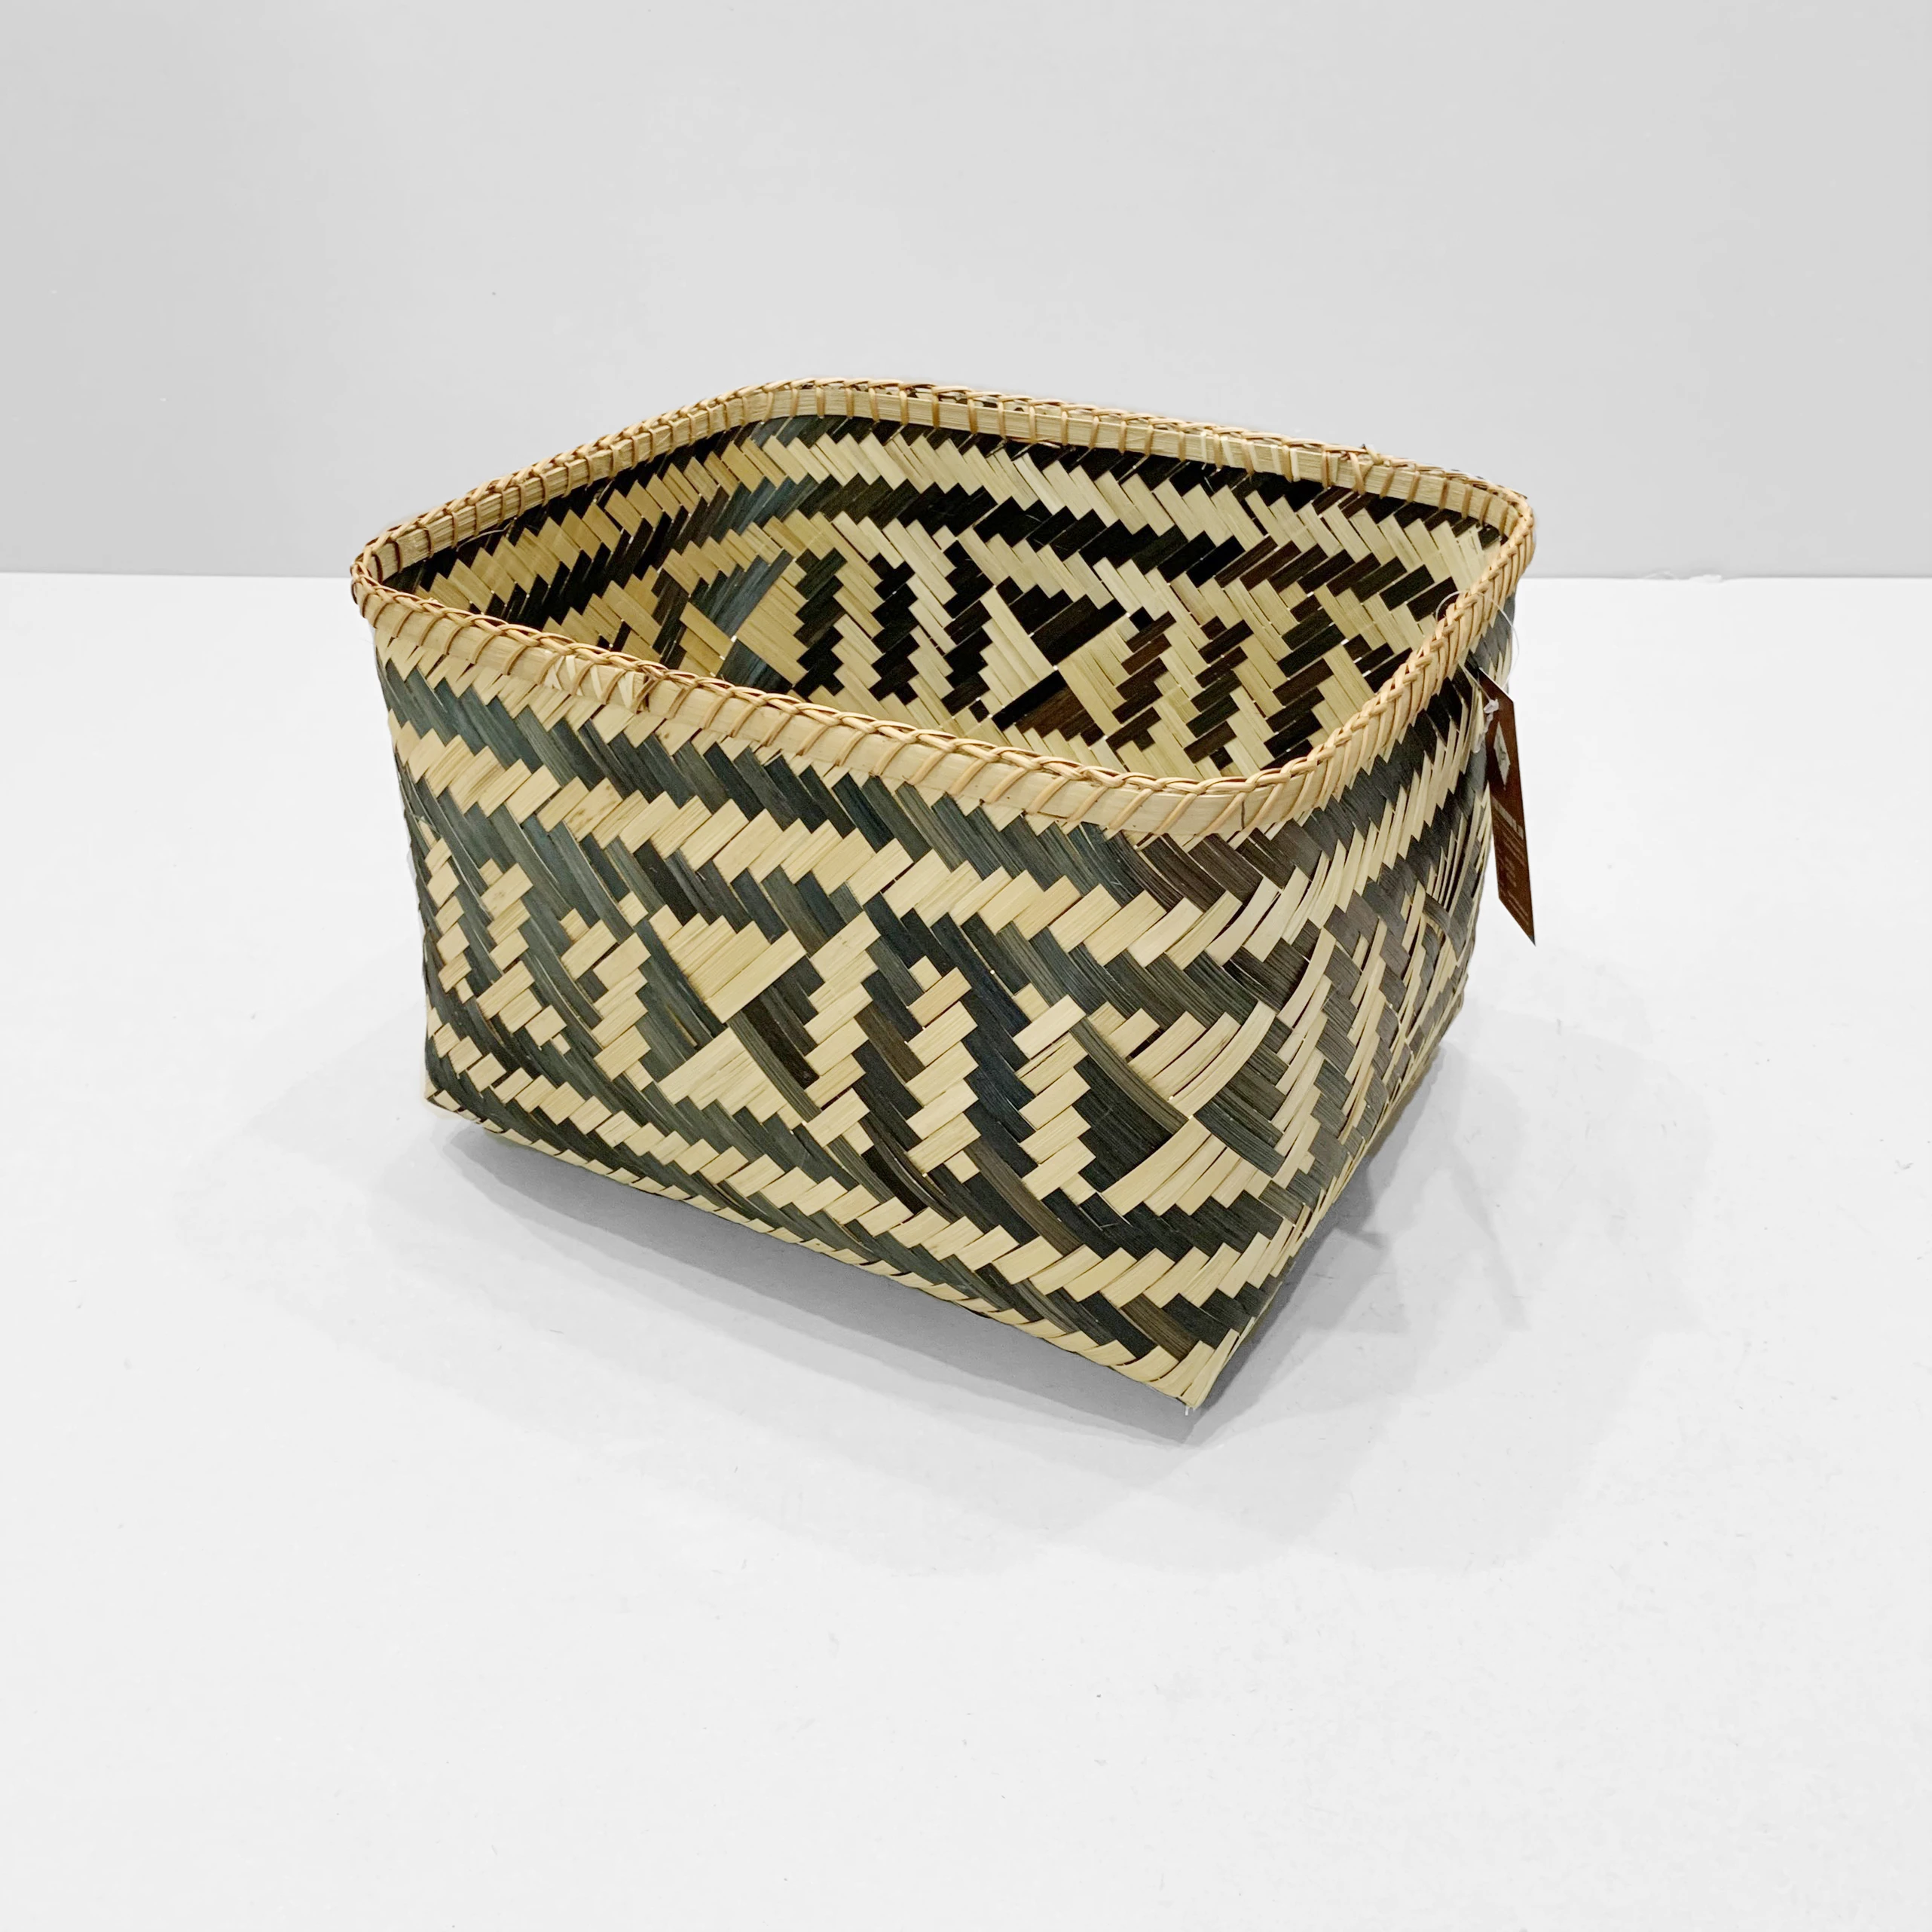 Vietnam Handwoven Bamboo storage basket Aztec pattern wicker storage basket